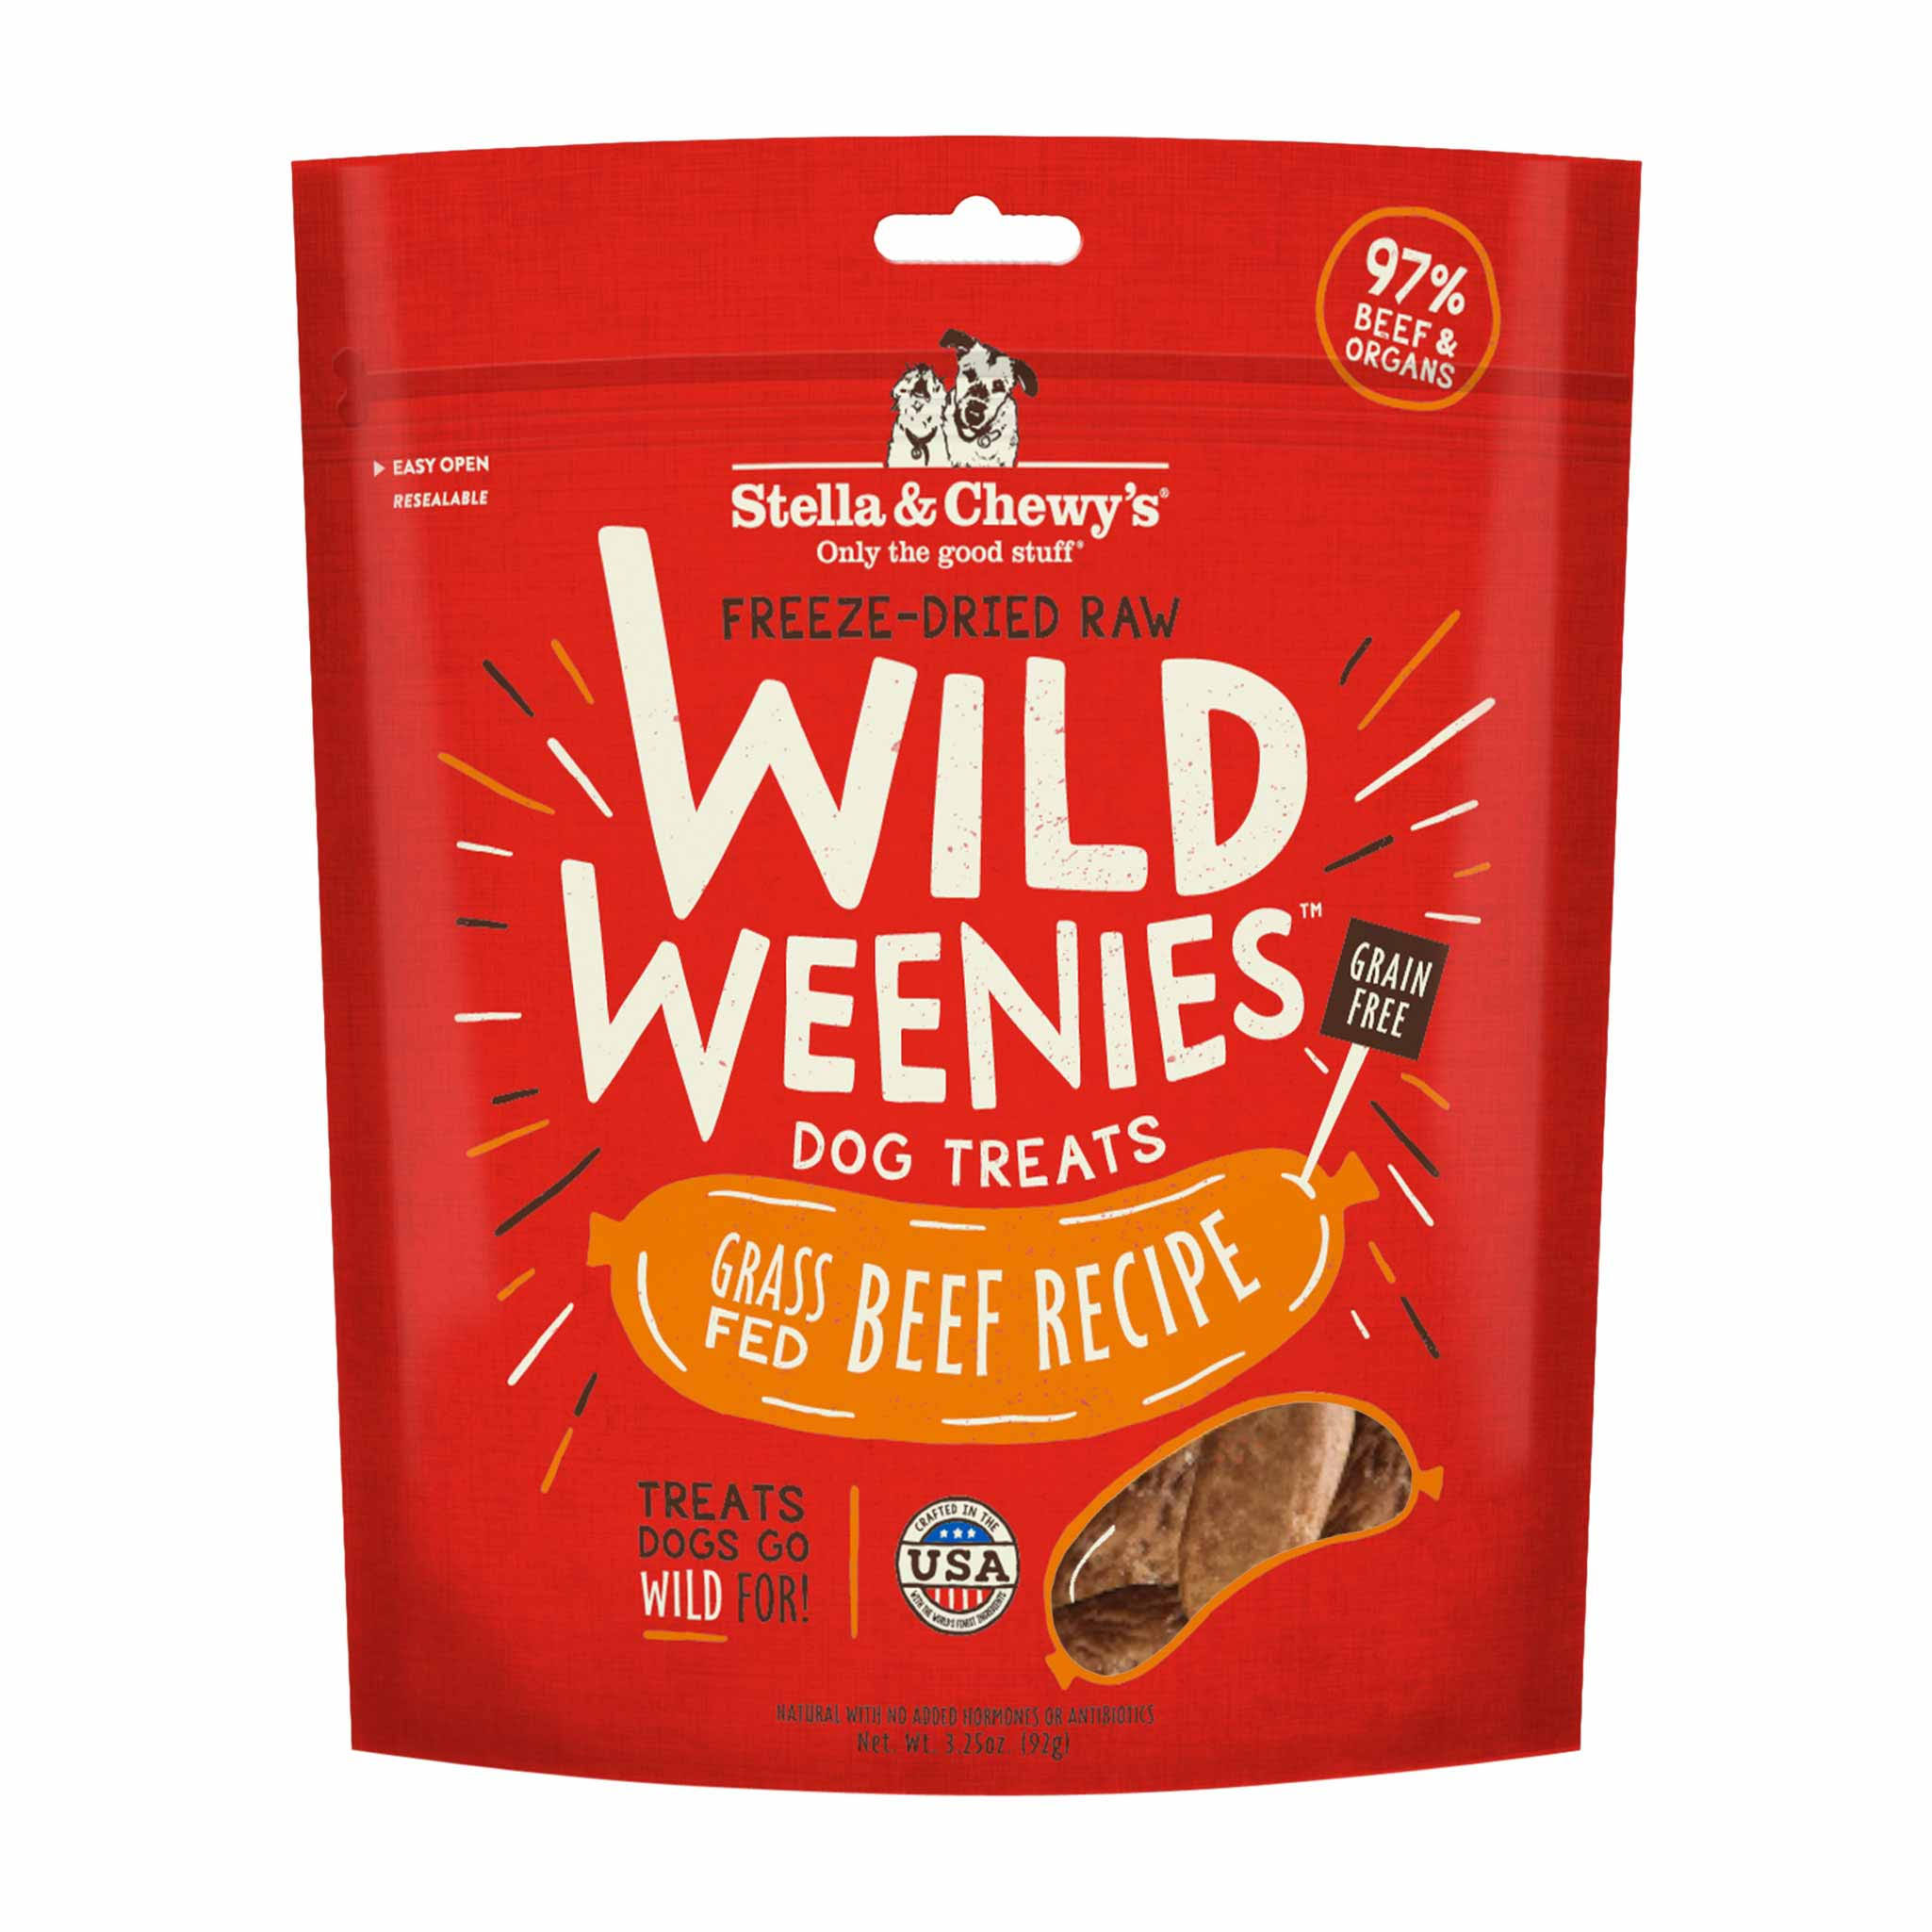 Stella & Chewy's FreezeDried Raw Wild Weenies Dog Treats Beef Recipe 3.25 oz.